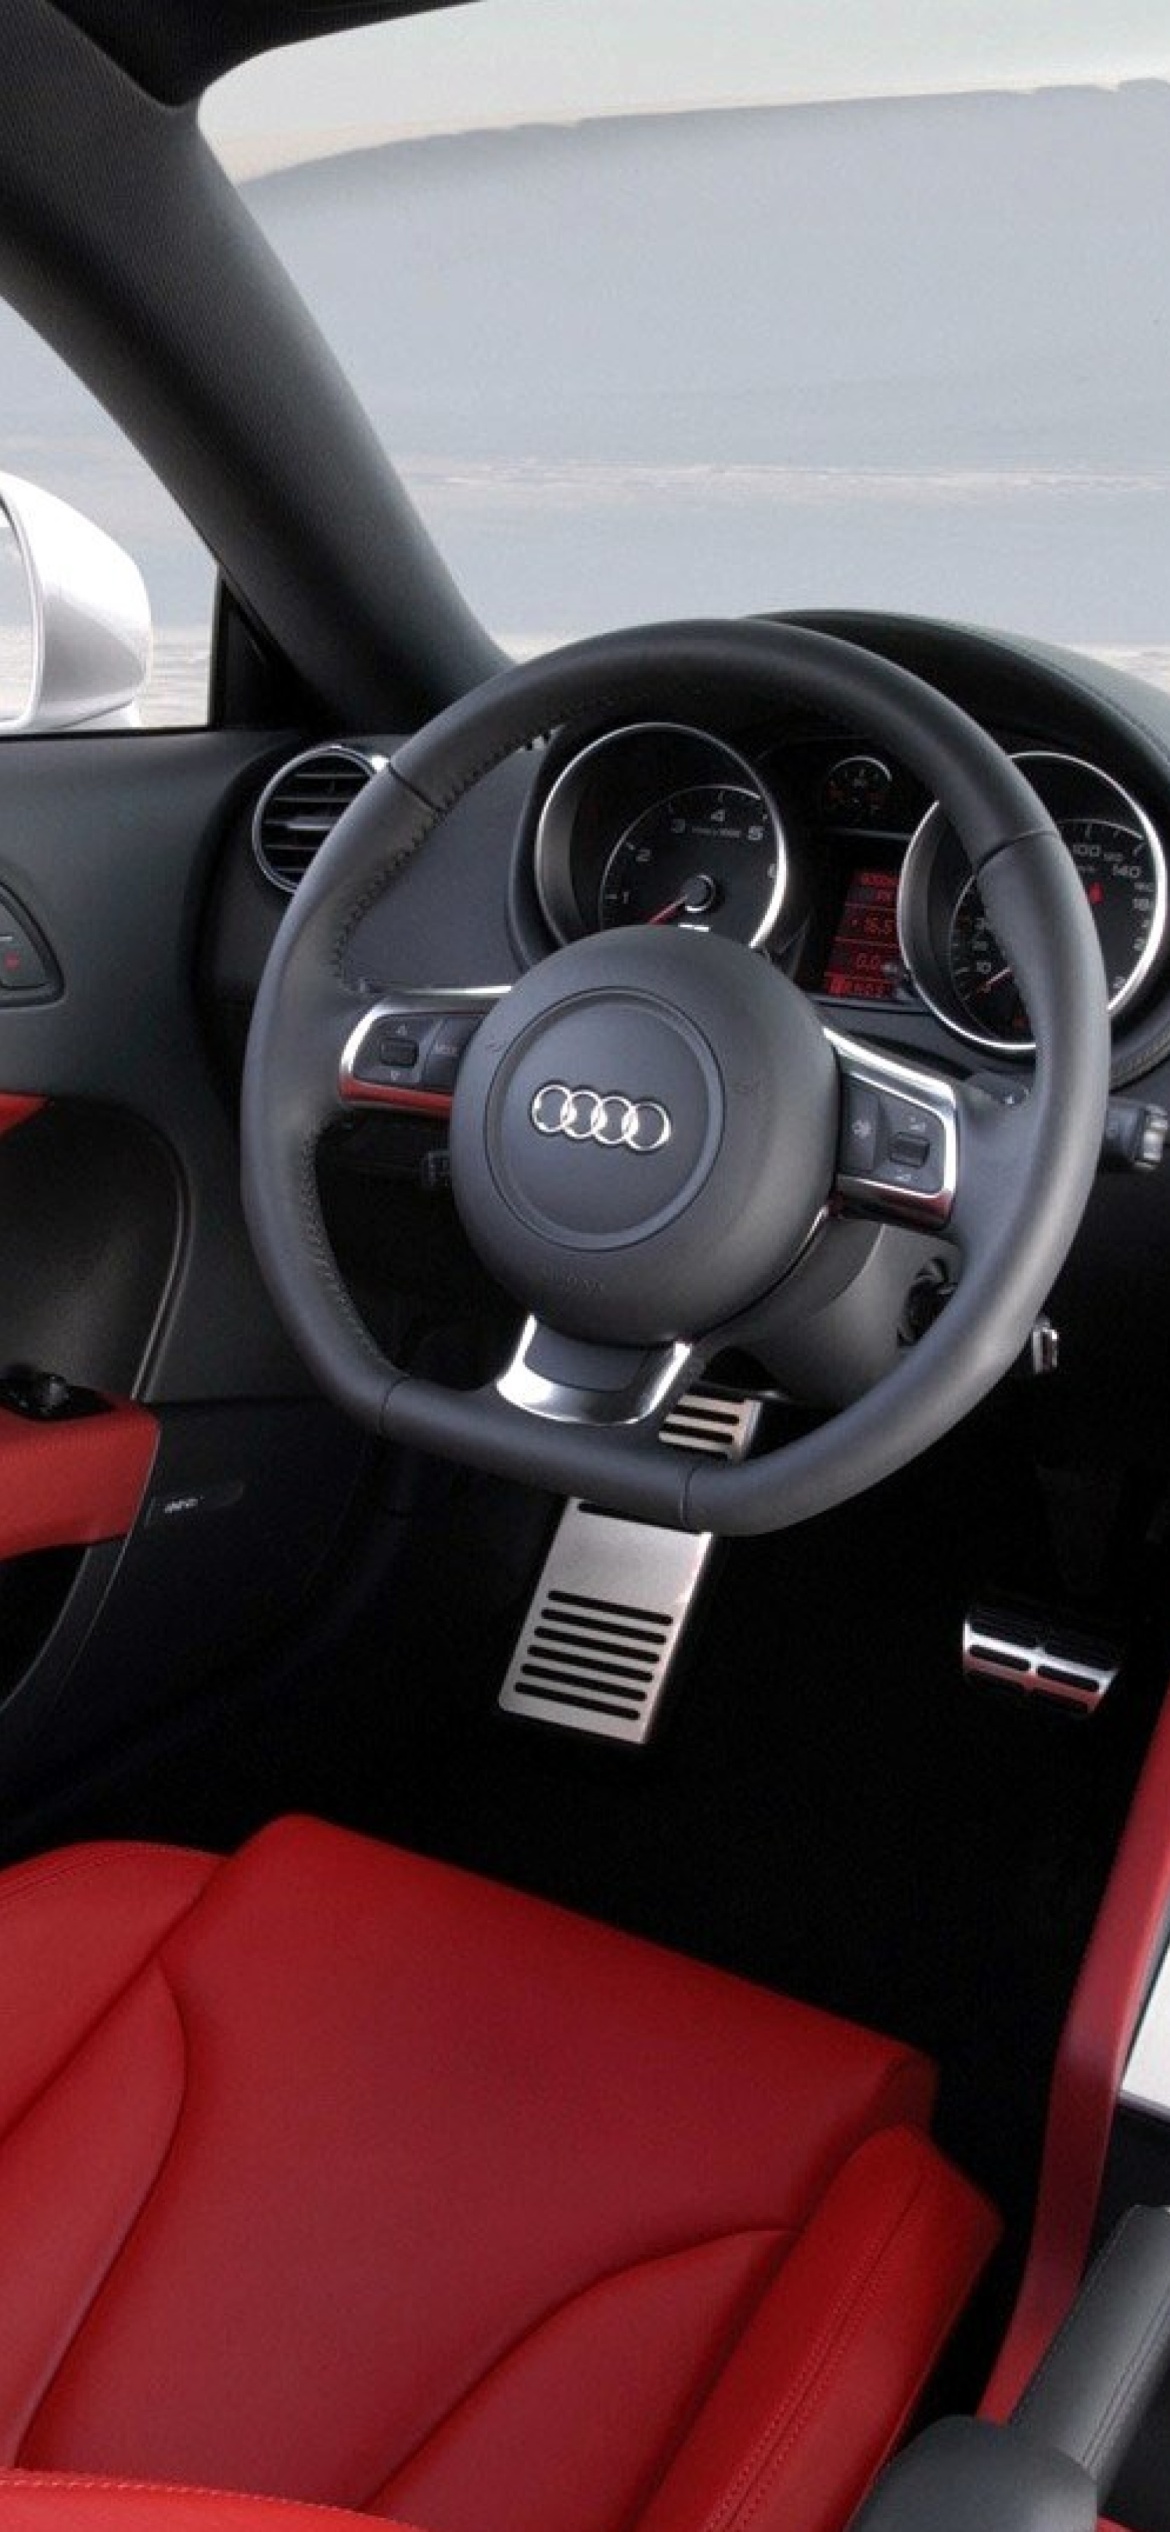 Audi TT 3 2 Quattro Interior screenshot #1 1170x2532